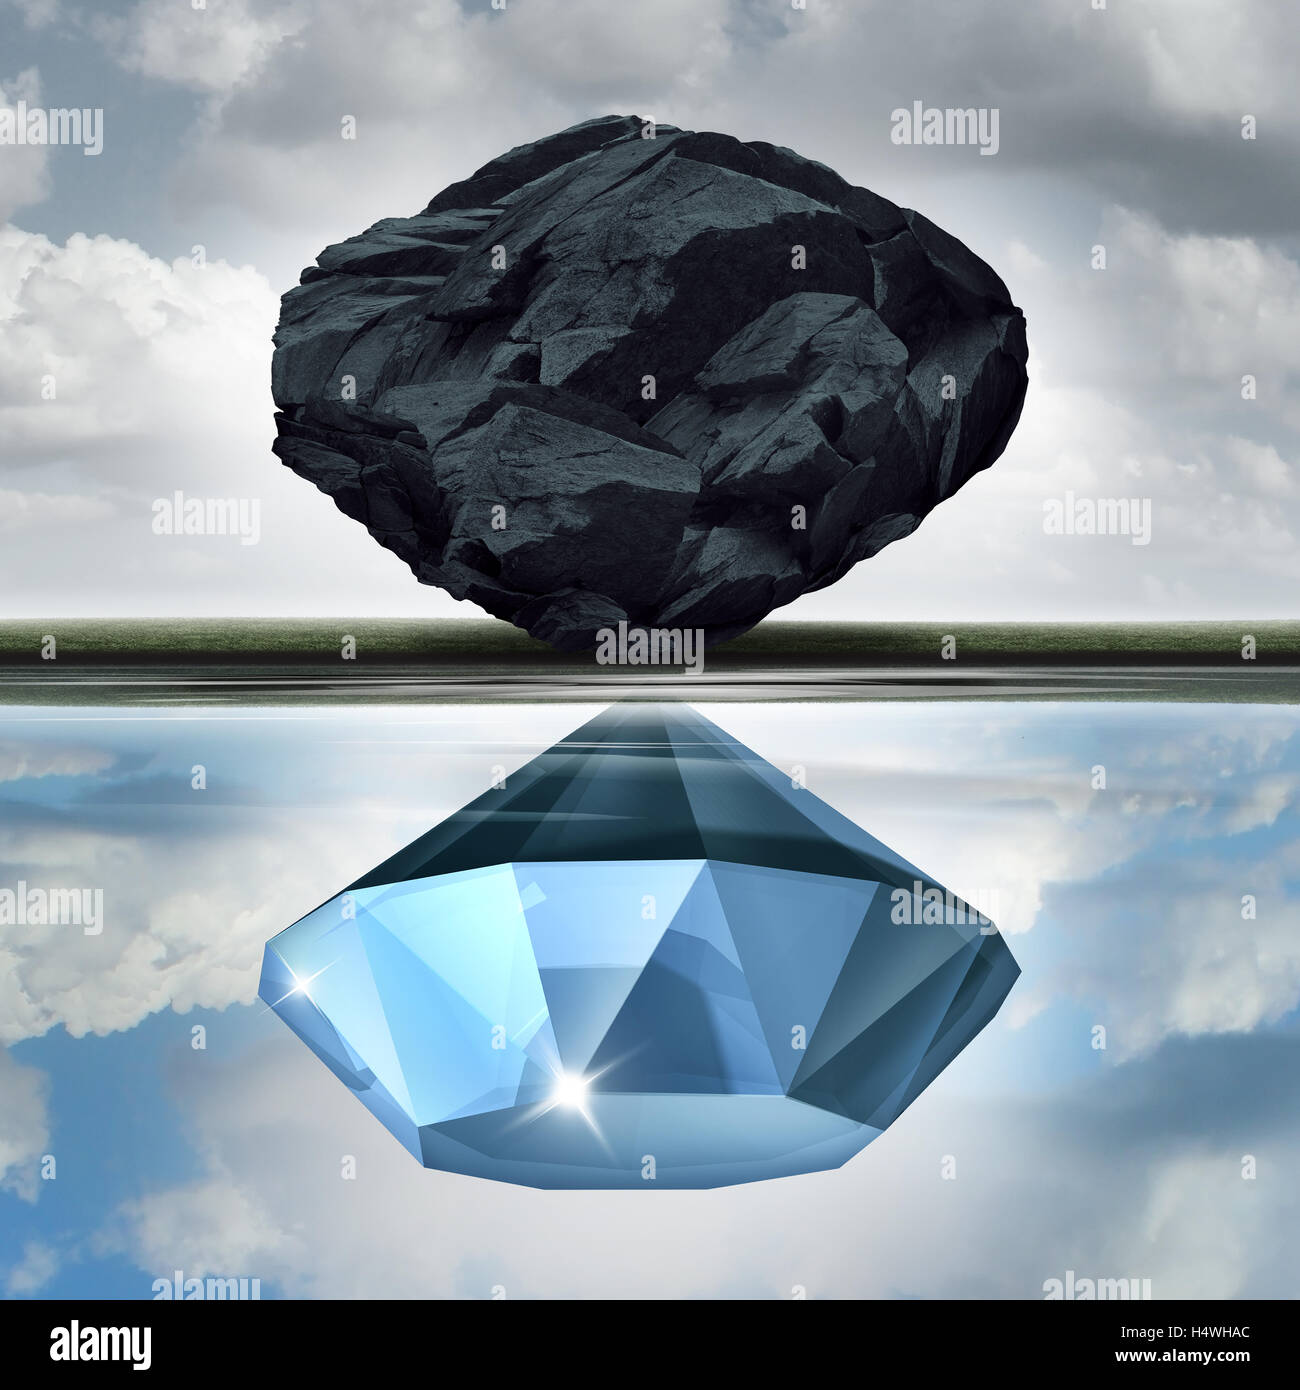 Bewertung Vision sehen, die Möglichkeiten der Wert Gelegenheit als ein Reichtum finanzielle Visualisierungskonzept als einen Stein oder Kohle machen ein Spiegelbild im Wasser eines kostbaren Diamanten mit 3D Abbildung Elemente. Stockfoto